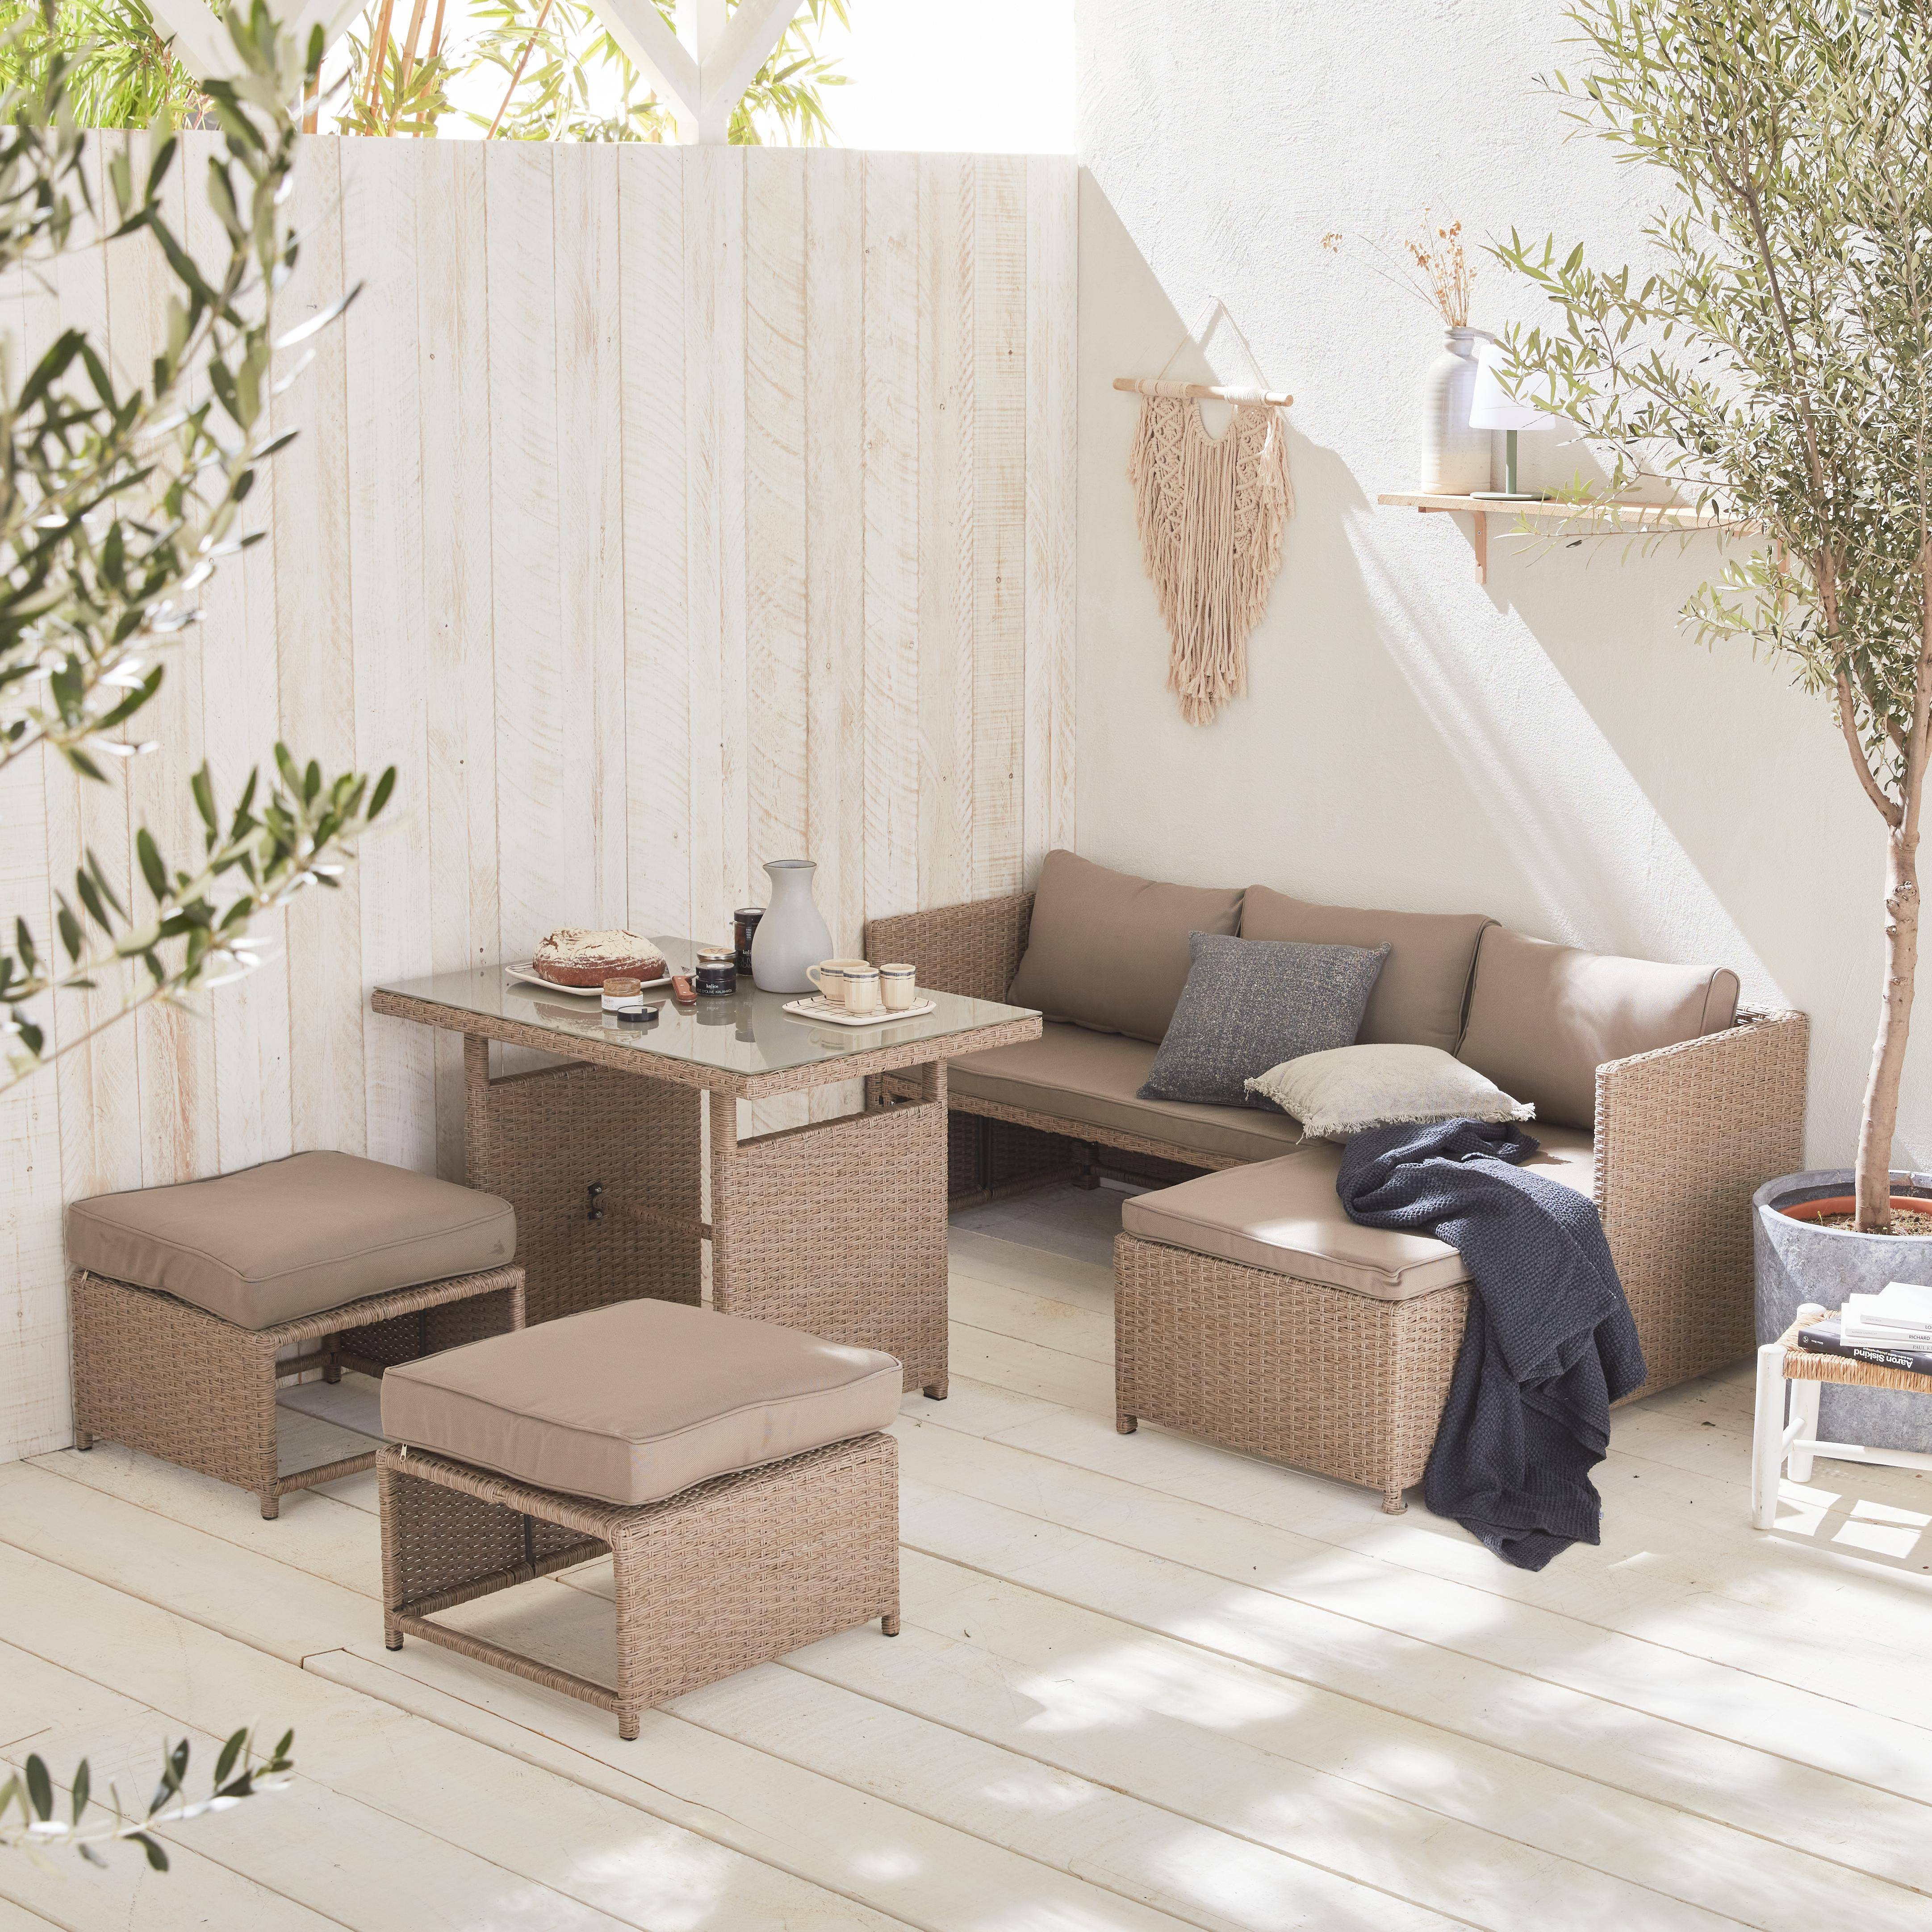 Conjunto de muebles de jardín de 6 plazas - Reggiano - Resina natural, cojines beige, mesa de jardín con sofá, chaise longue y 2 pufs incorporados Photo1